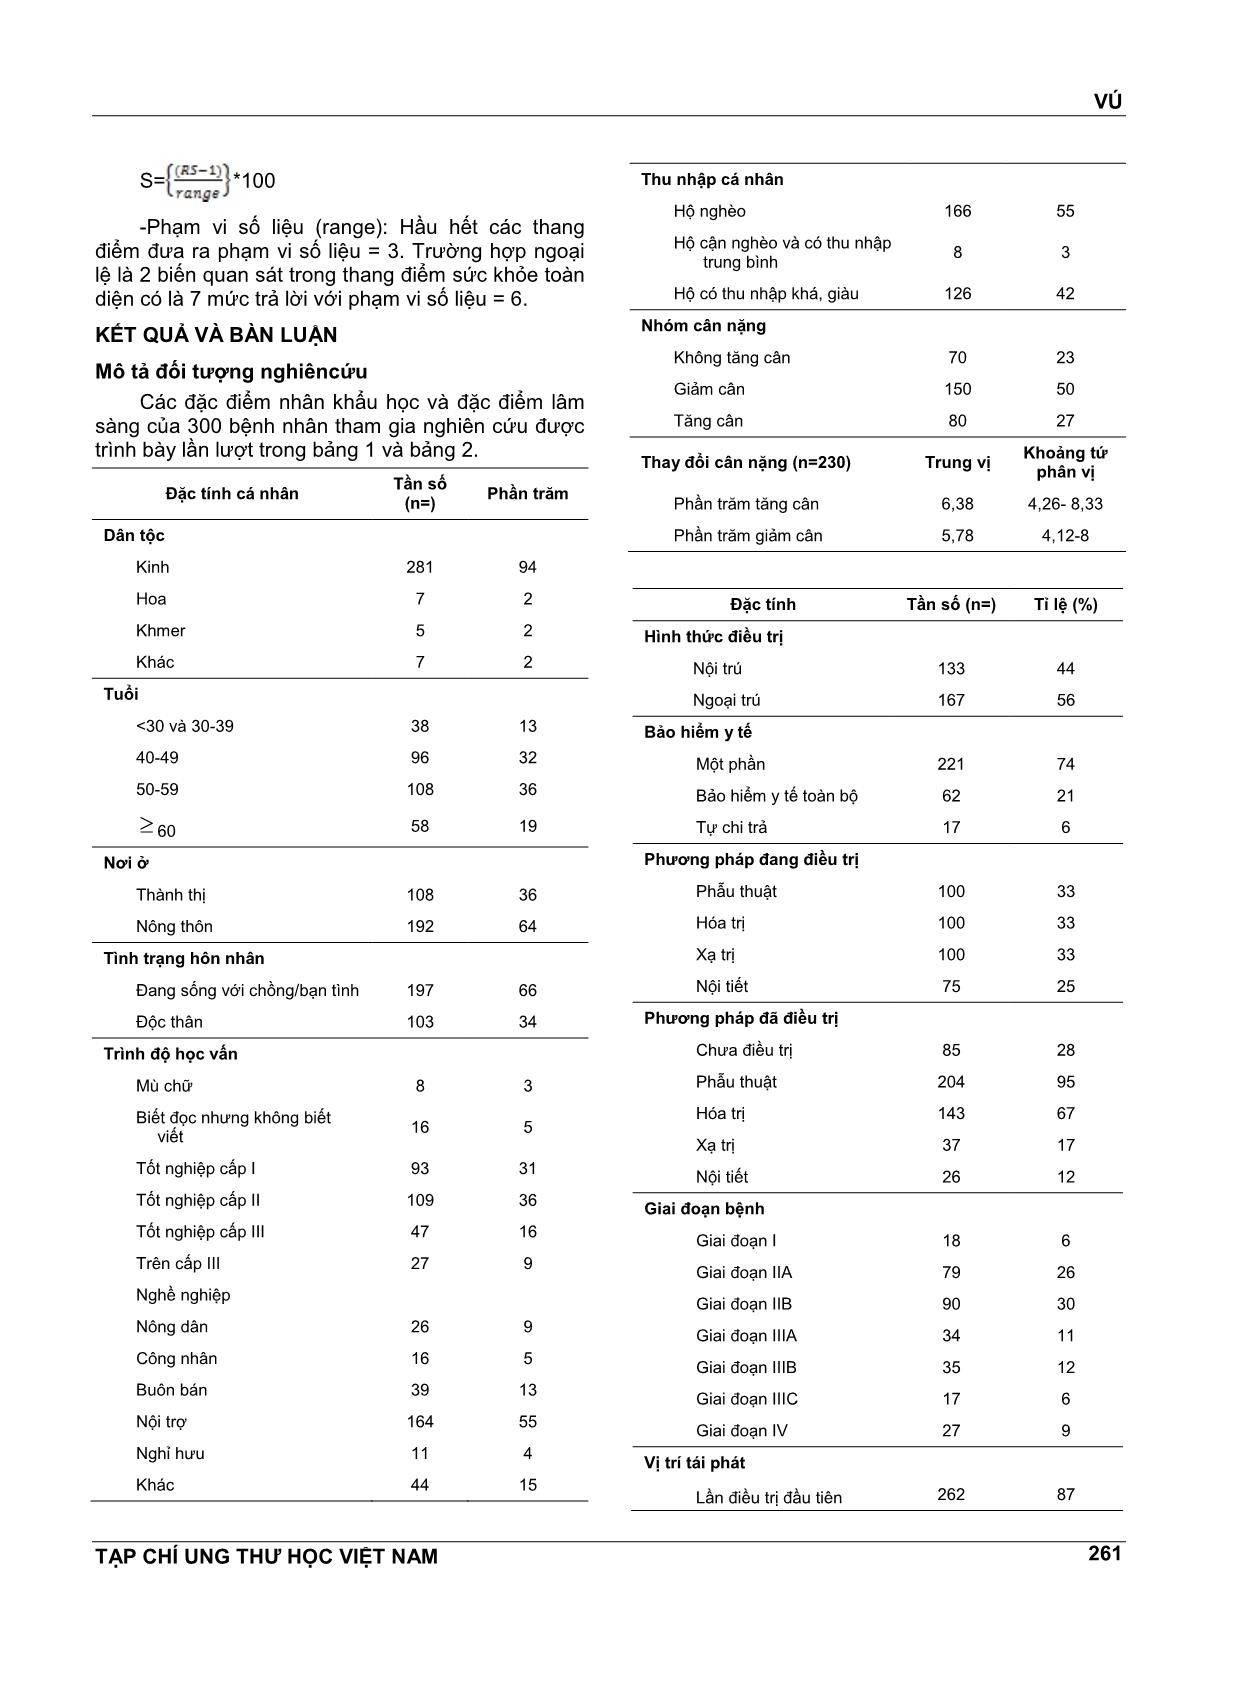 Giá trị của bộ câu hỏi eortc qlq - Br53 để đo lường chất lượng cuộc sống cho bệnh nhân ung thư vú tại bệnh viện ung bướu thành phố Hồ Chí Minh trang 4